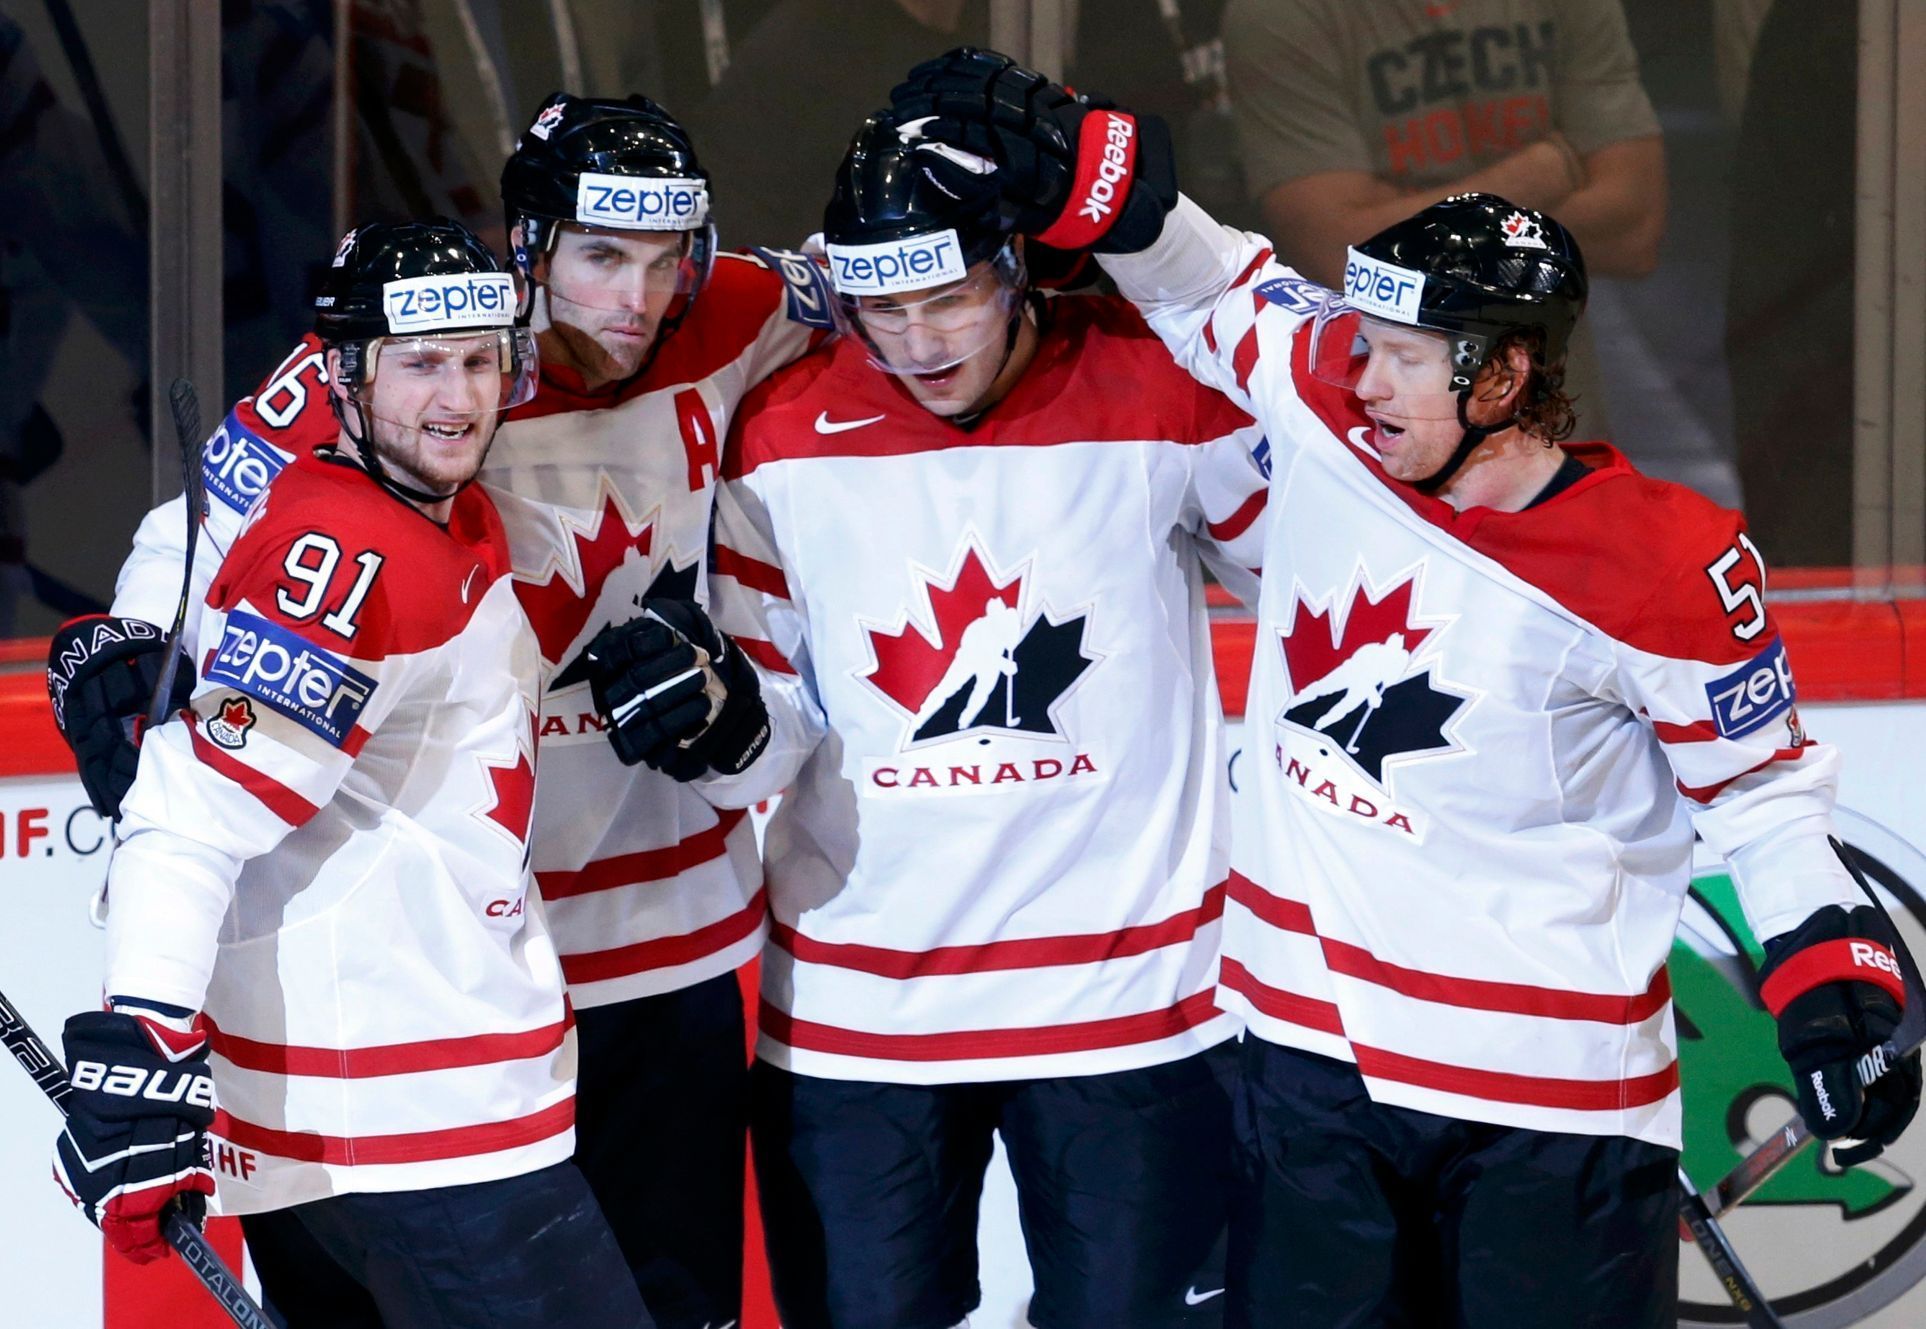 MS v hokeji 2013, Kanada - Švýcarsko: Kanada slaví gól na 1:1